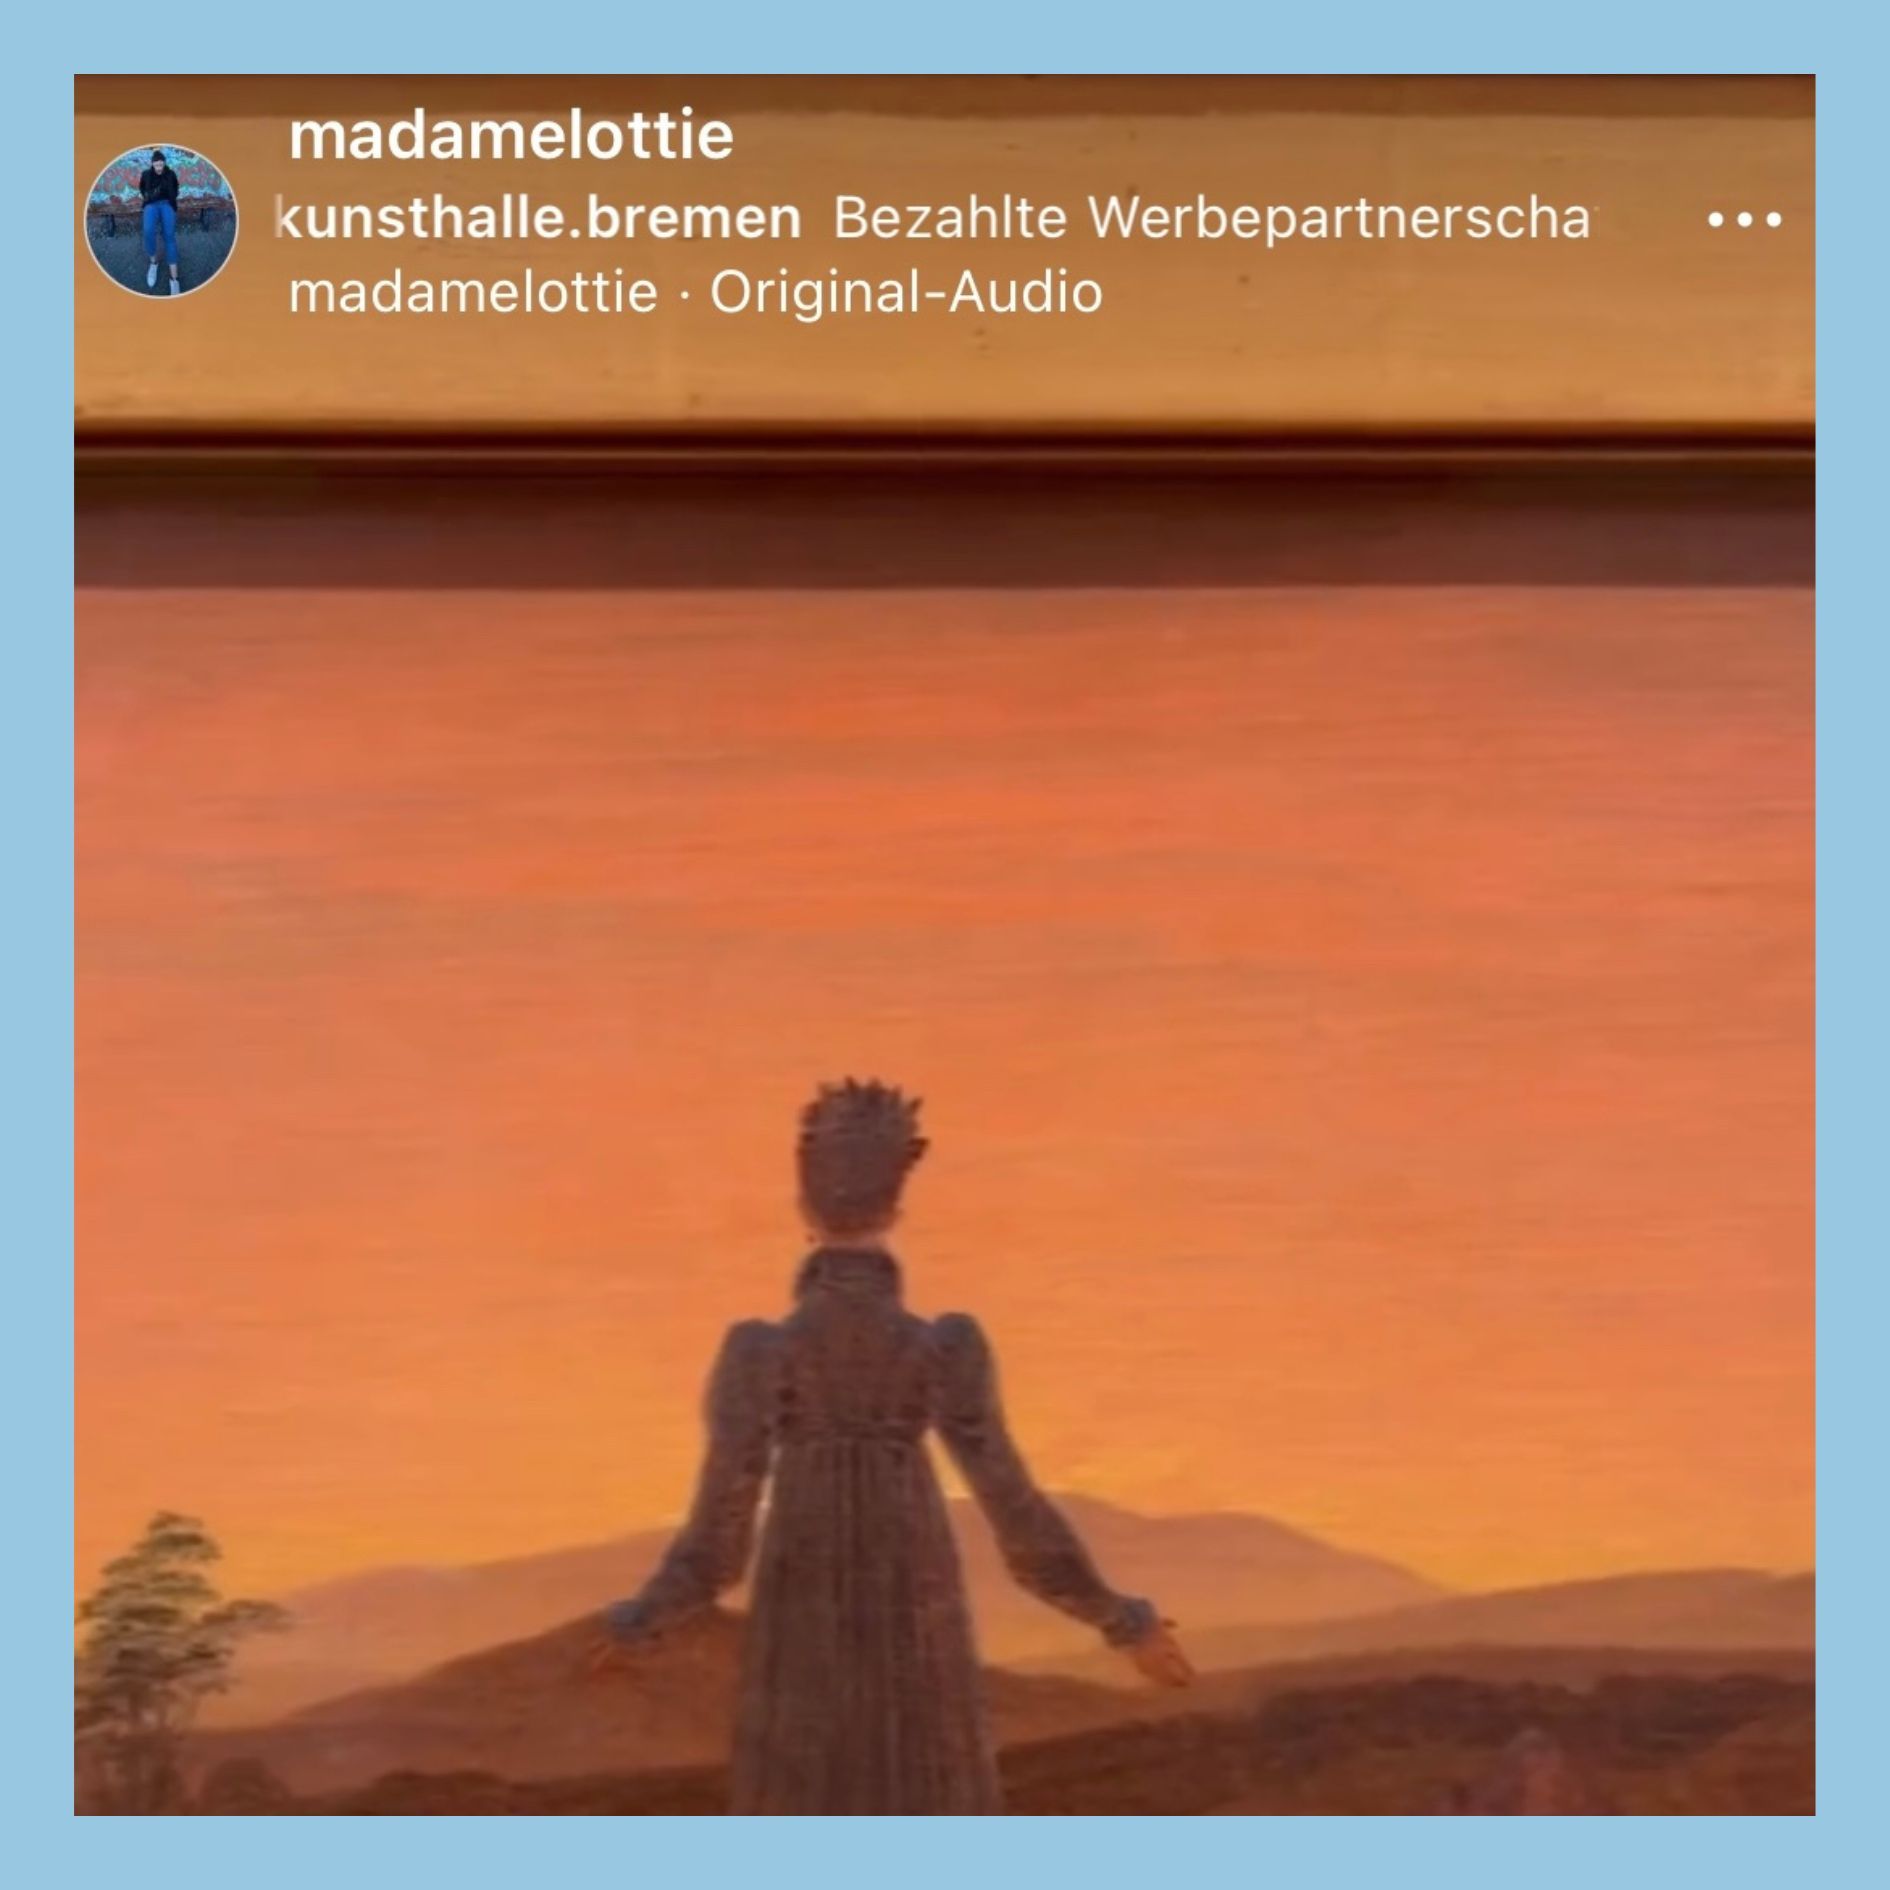 Ein Screenshot aus einem Video einer Werbepartnerschaft. Das Bild zeigt einen Ausschnitt eines Gemäldes mit einer Frau vor rötlichem Hintergrund.